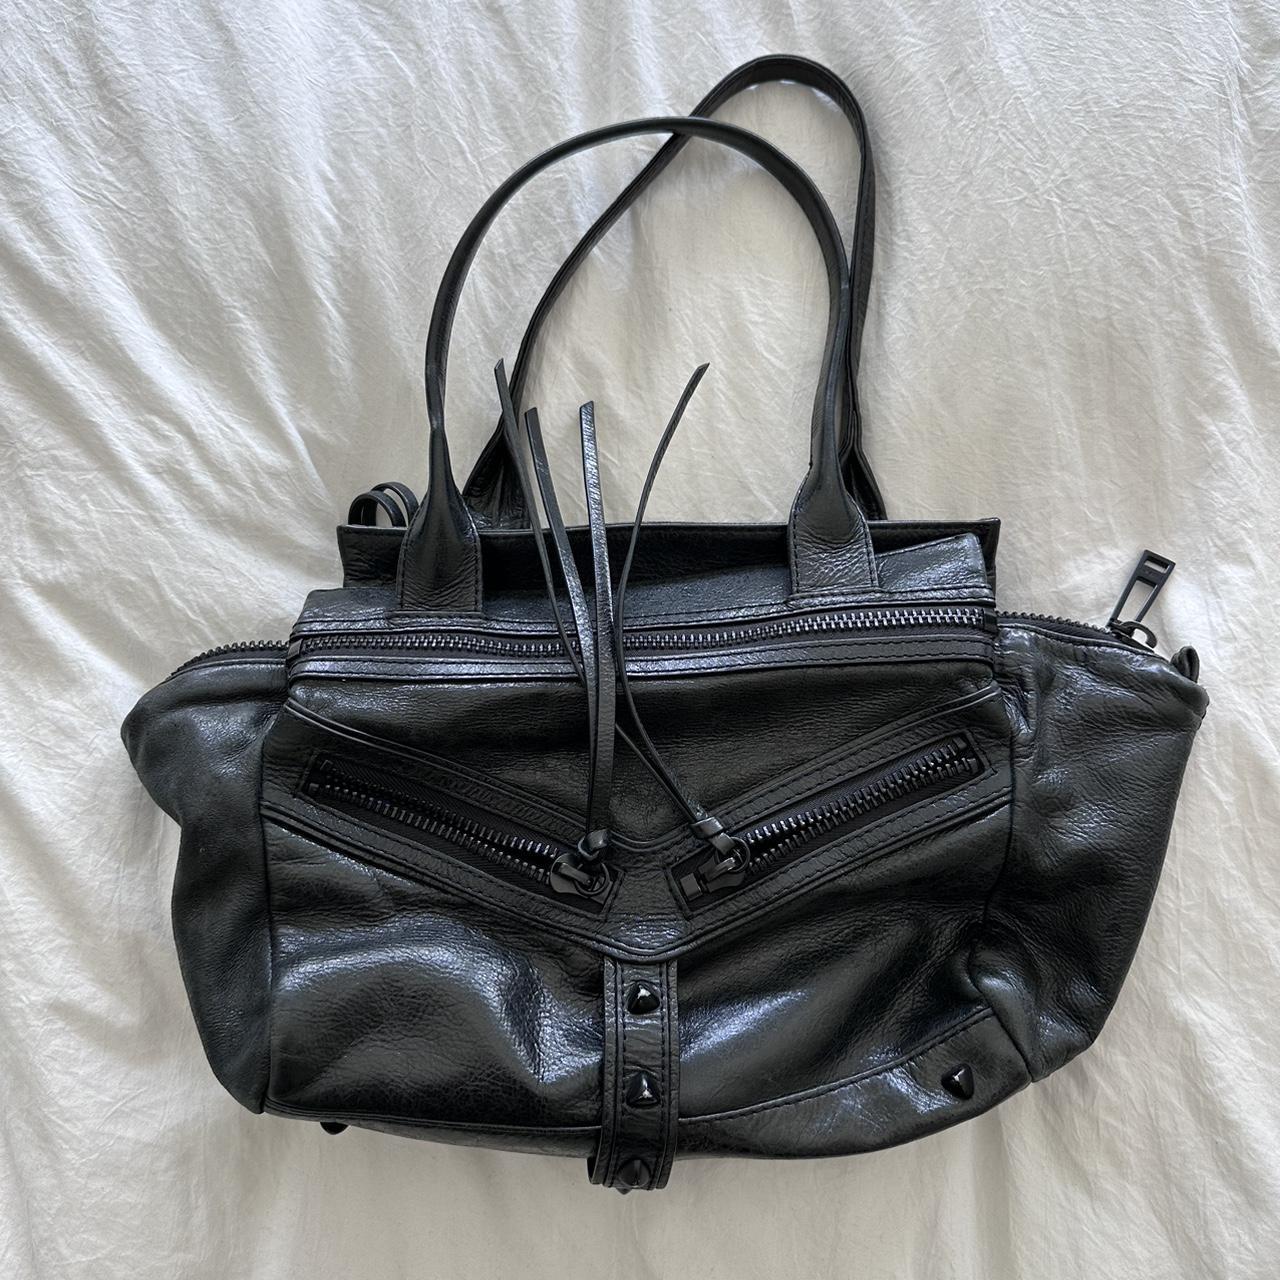 Botkier Women's Black Bag